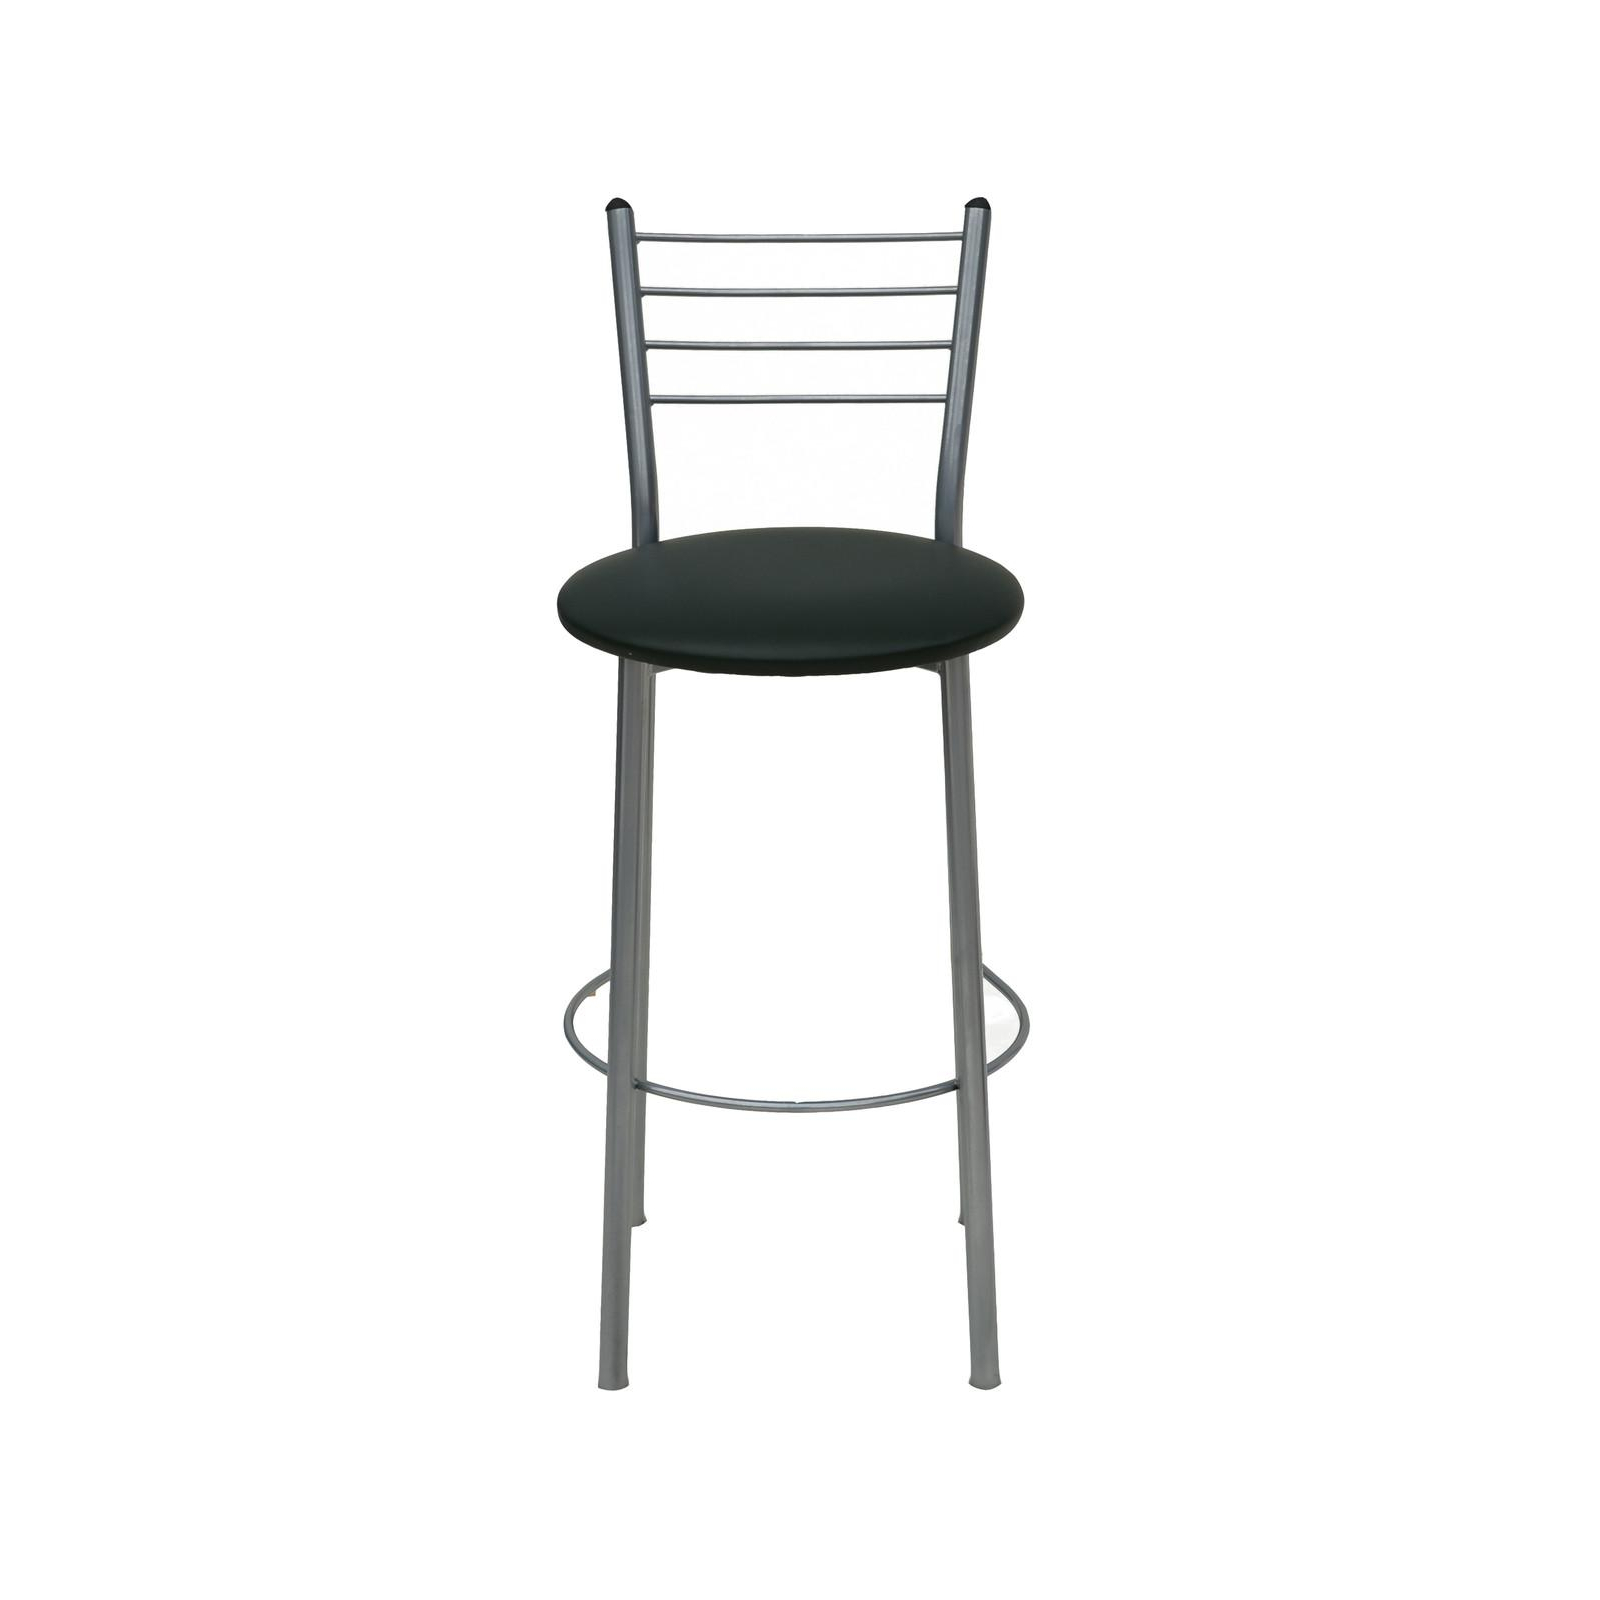 Барный стул Примтекс плюс барный 1022 Hoker alum S-6214 Dark Green (1022 HOKER alum S-6214)